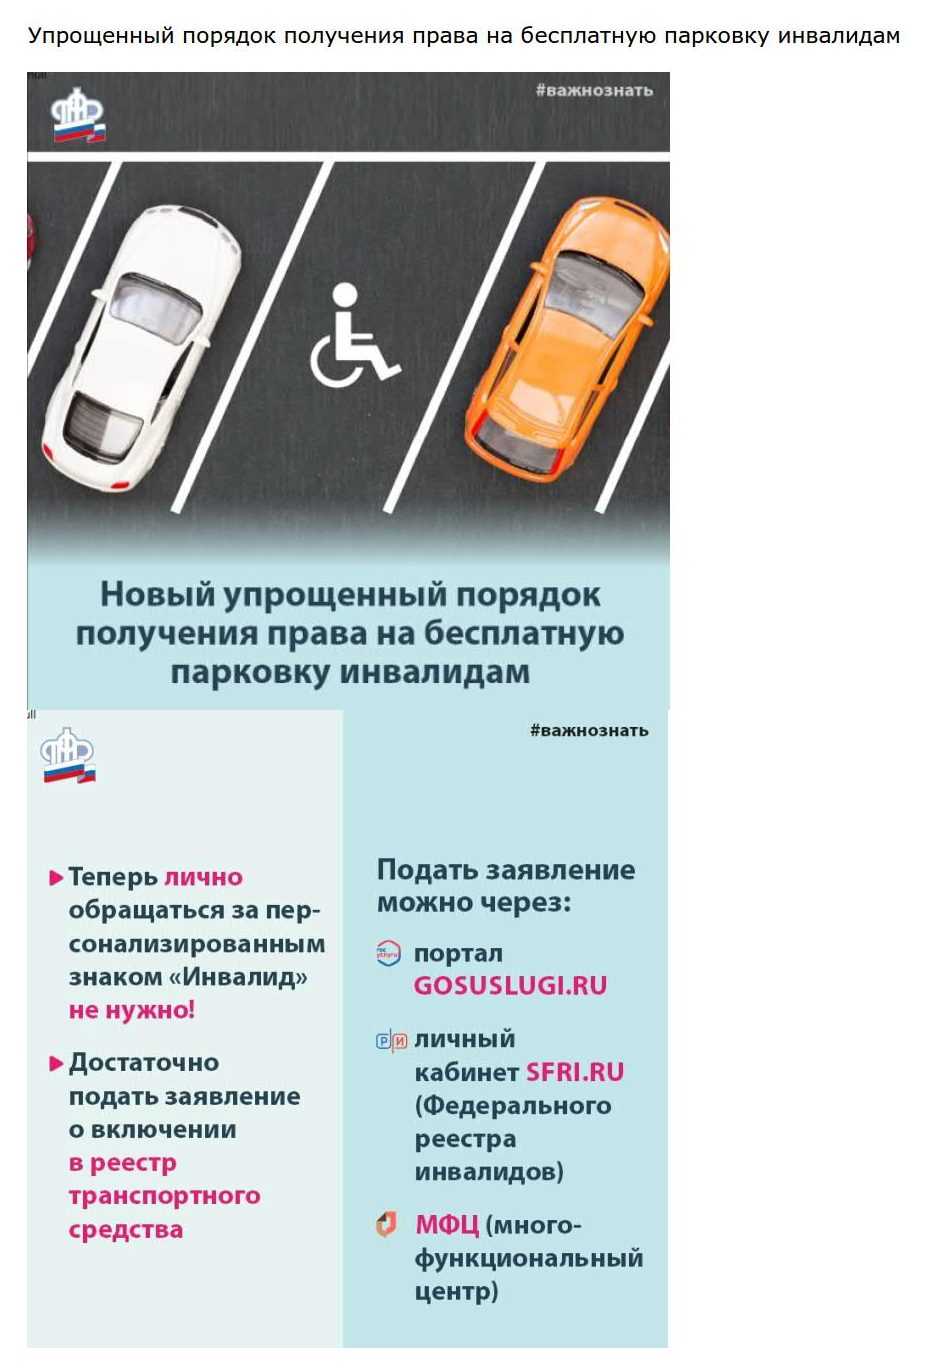 Парковка для инвалидов - как получить знак в 2020 году по новым правилам | bankstoday